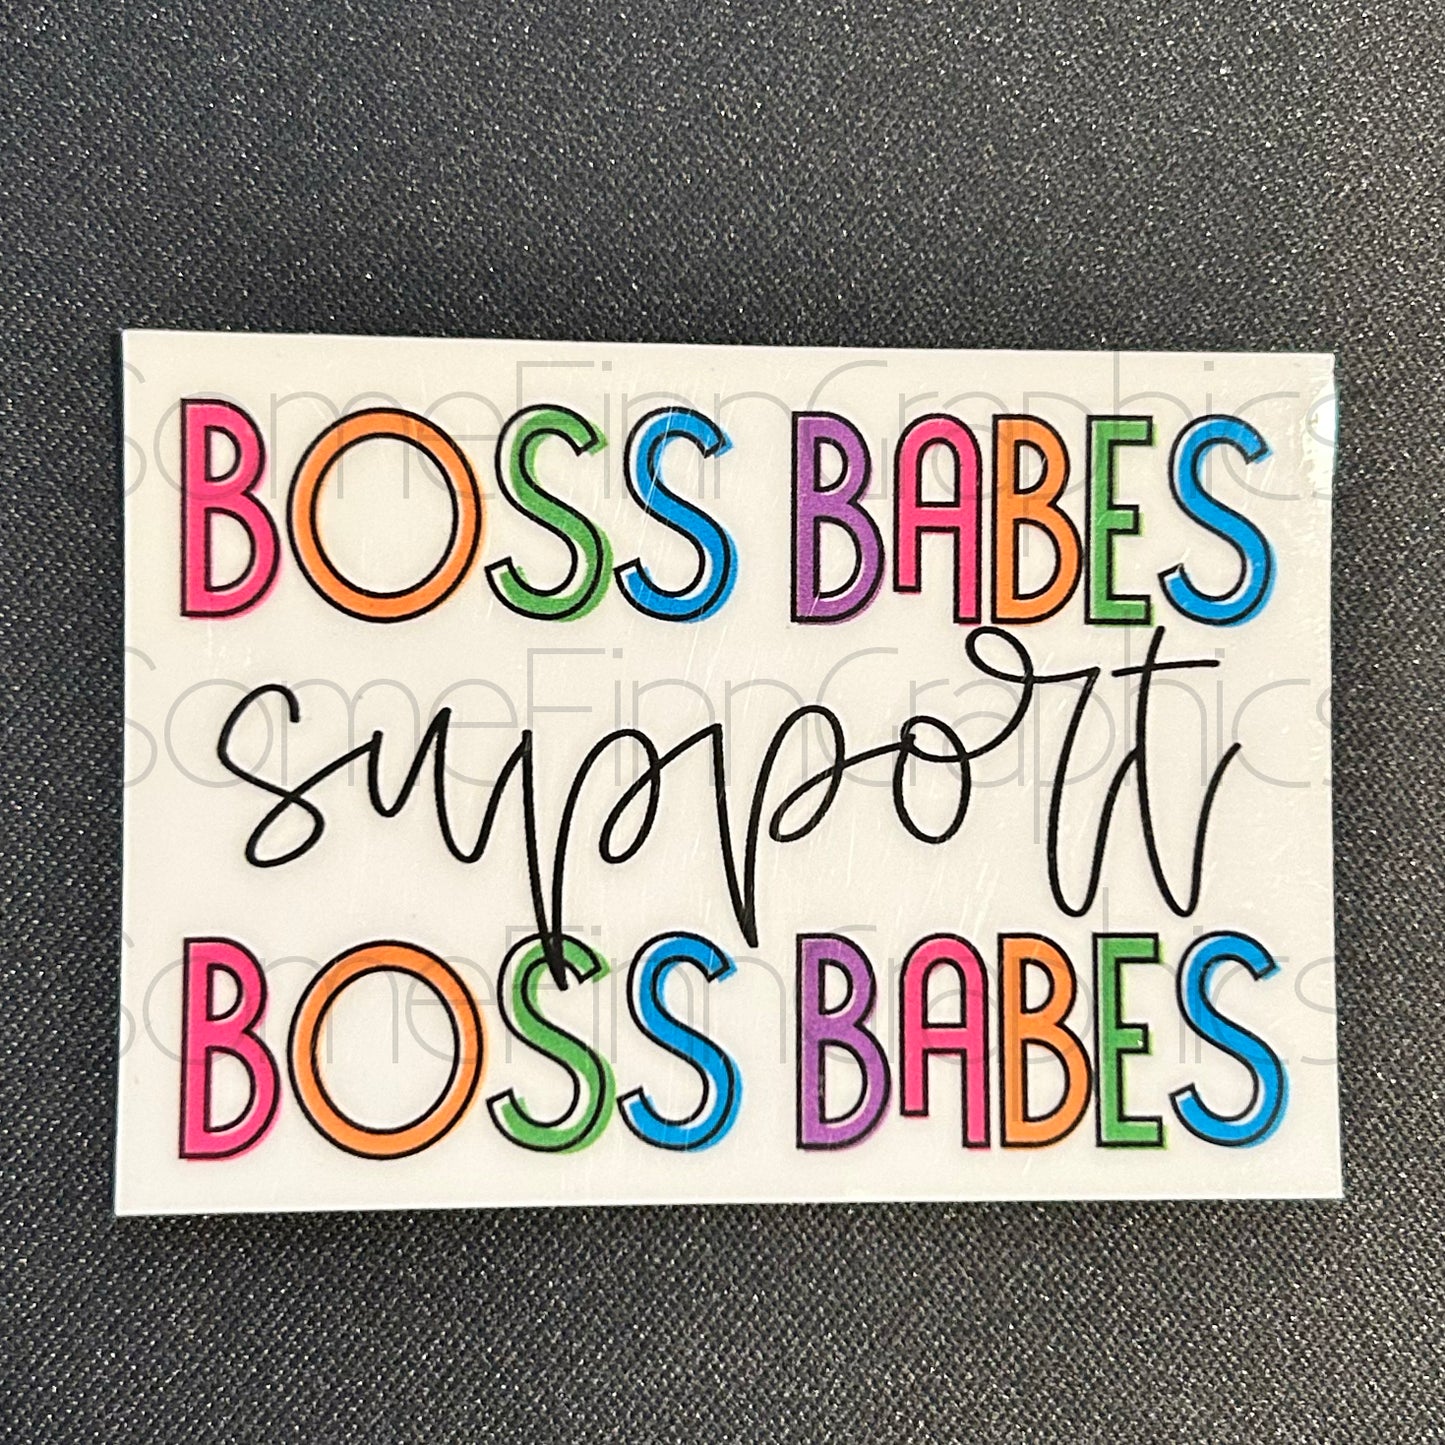 Boss Babes Support Boss Babes Sticker